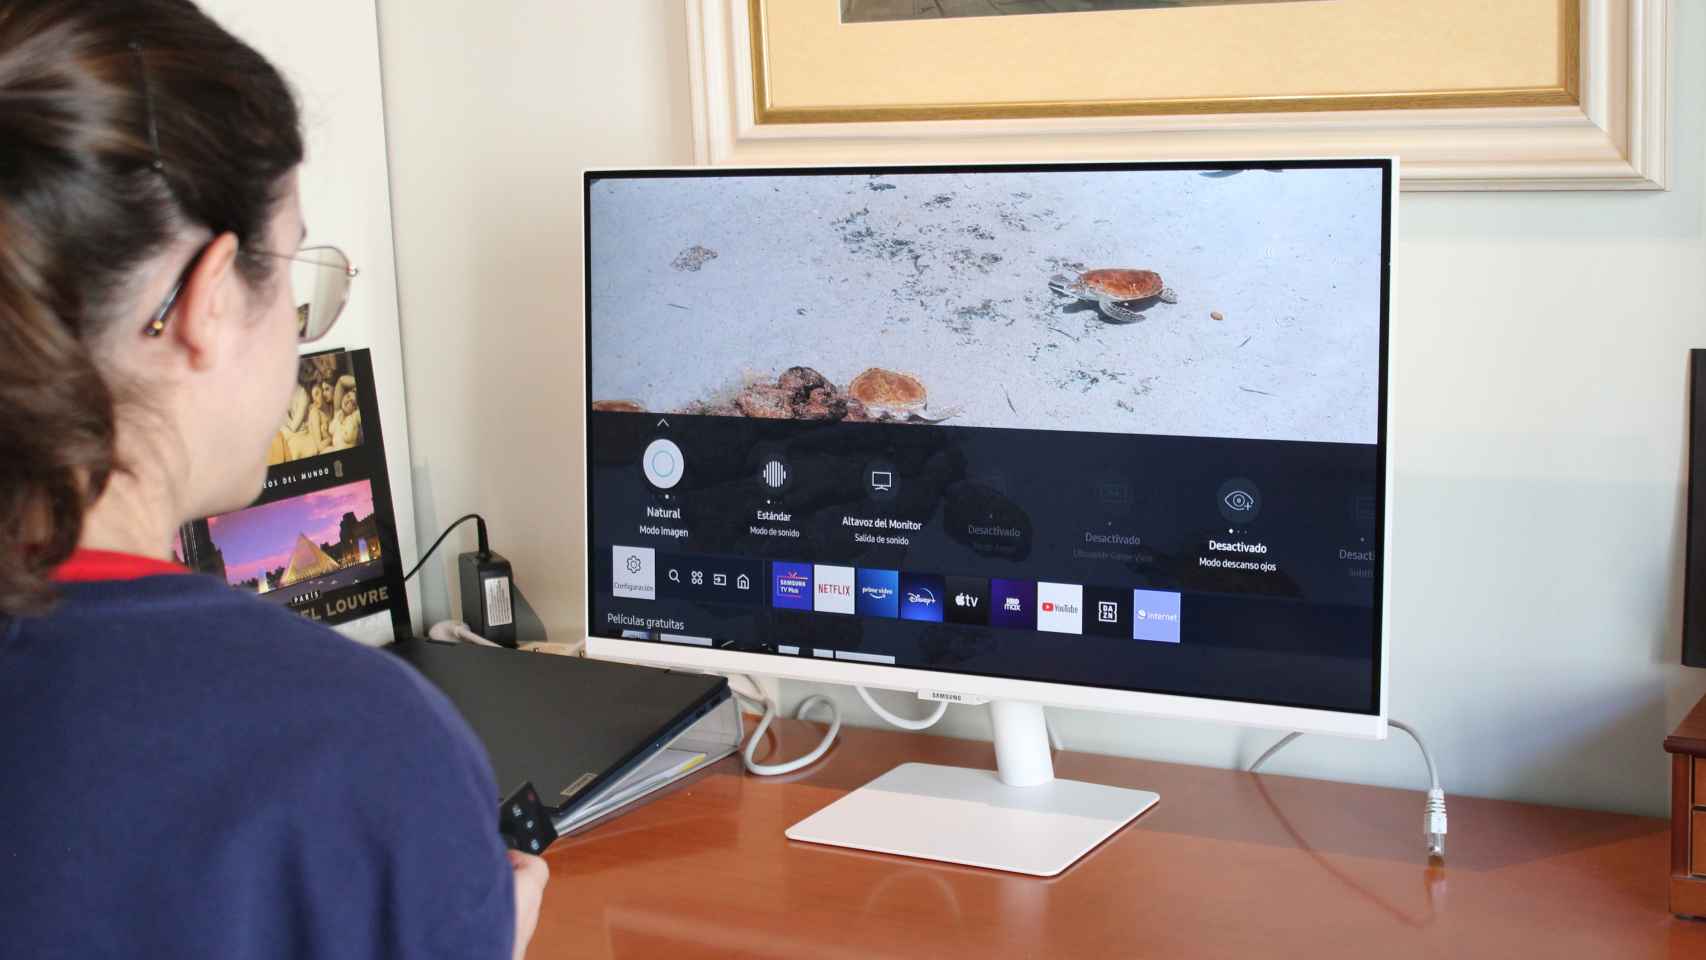 He probado el monitor de Samsung que también es Smart TV: ojalá